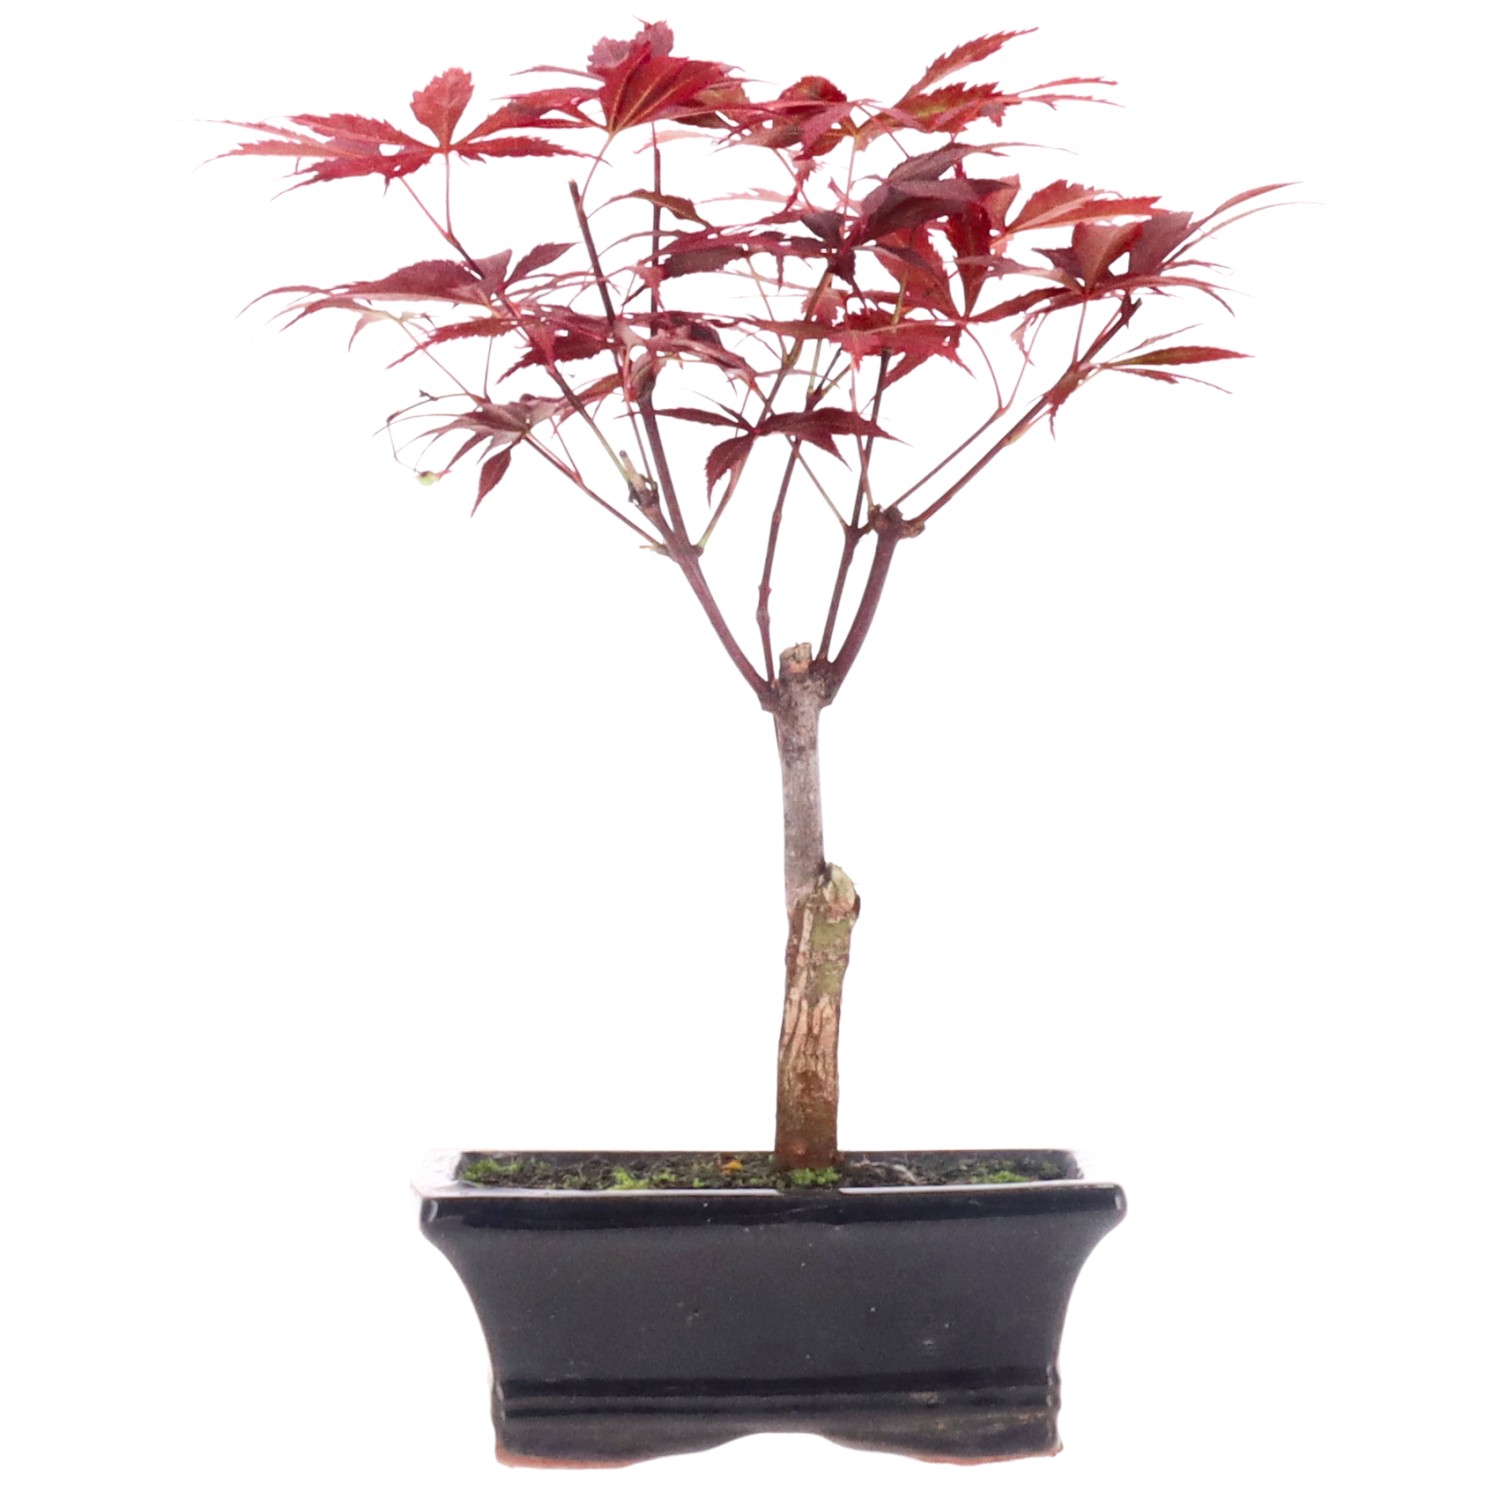 Acero rosso giapponese, ca. 7 anni (24 cm)